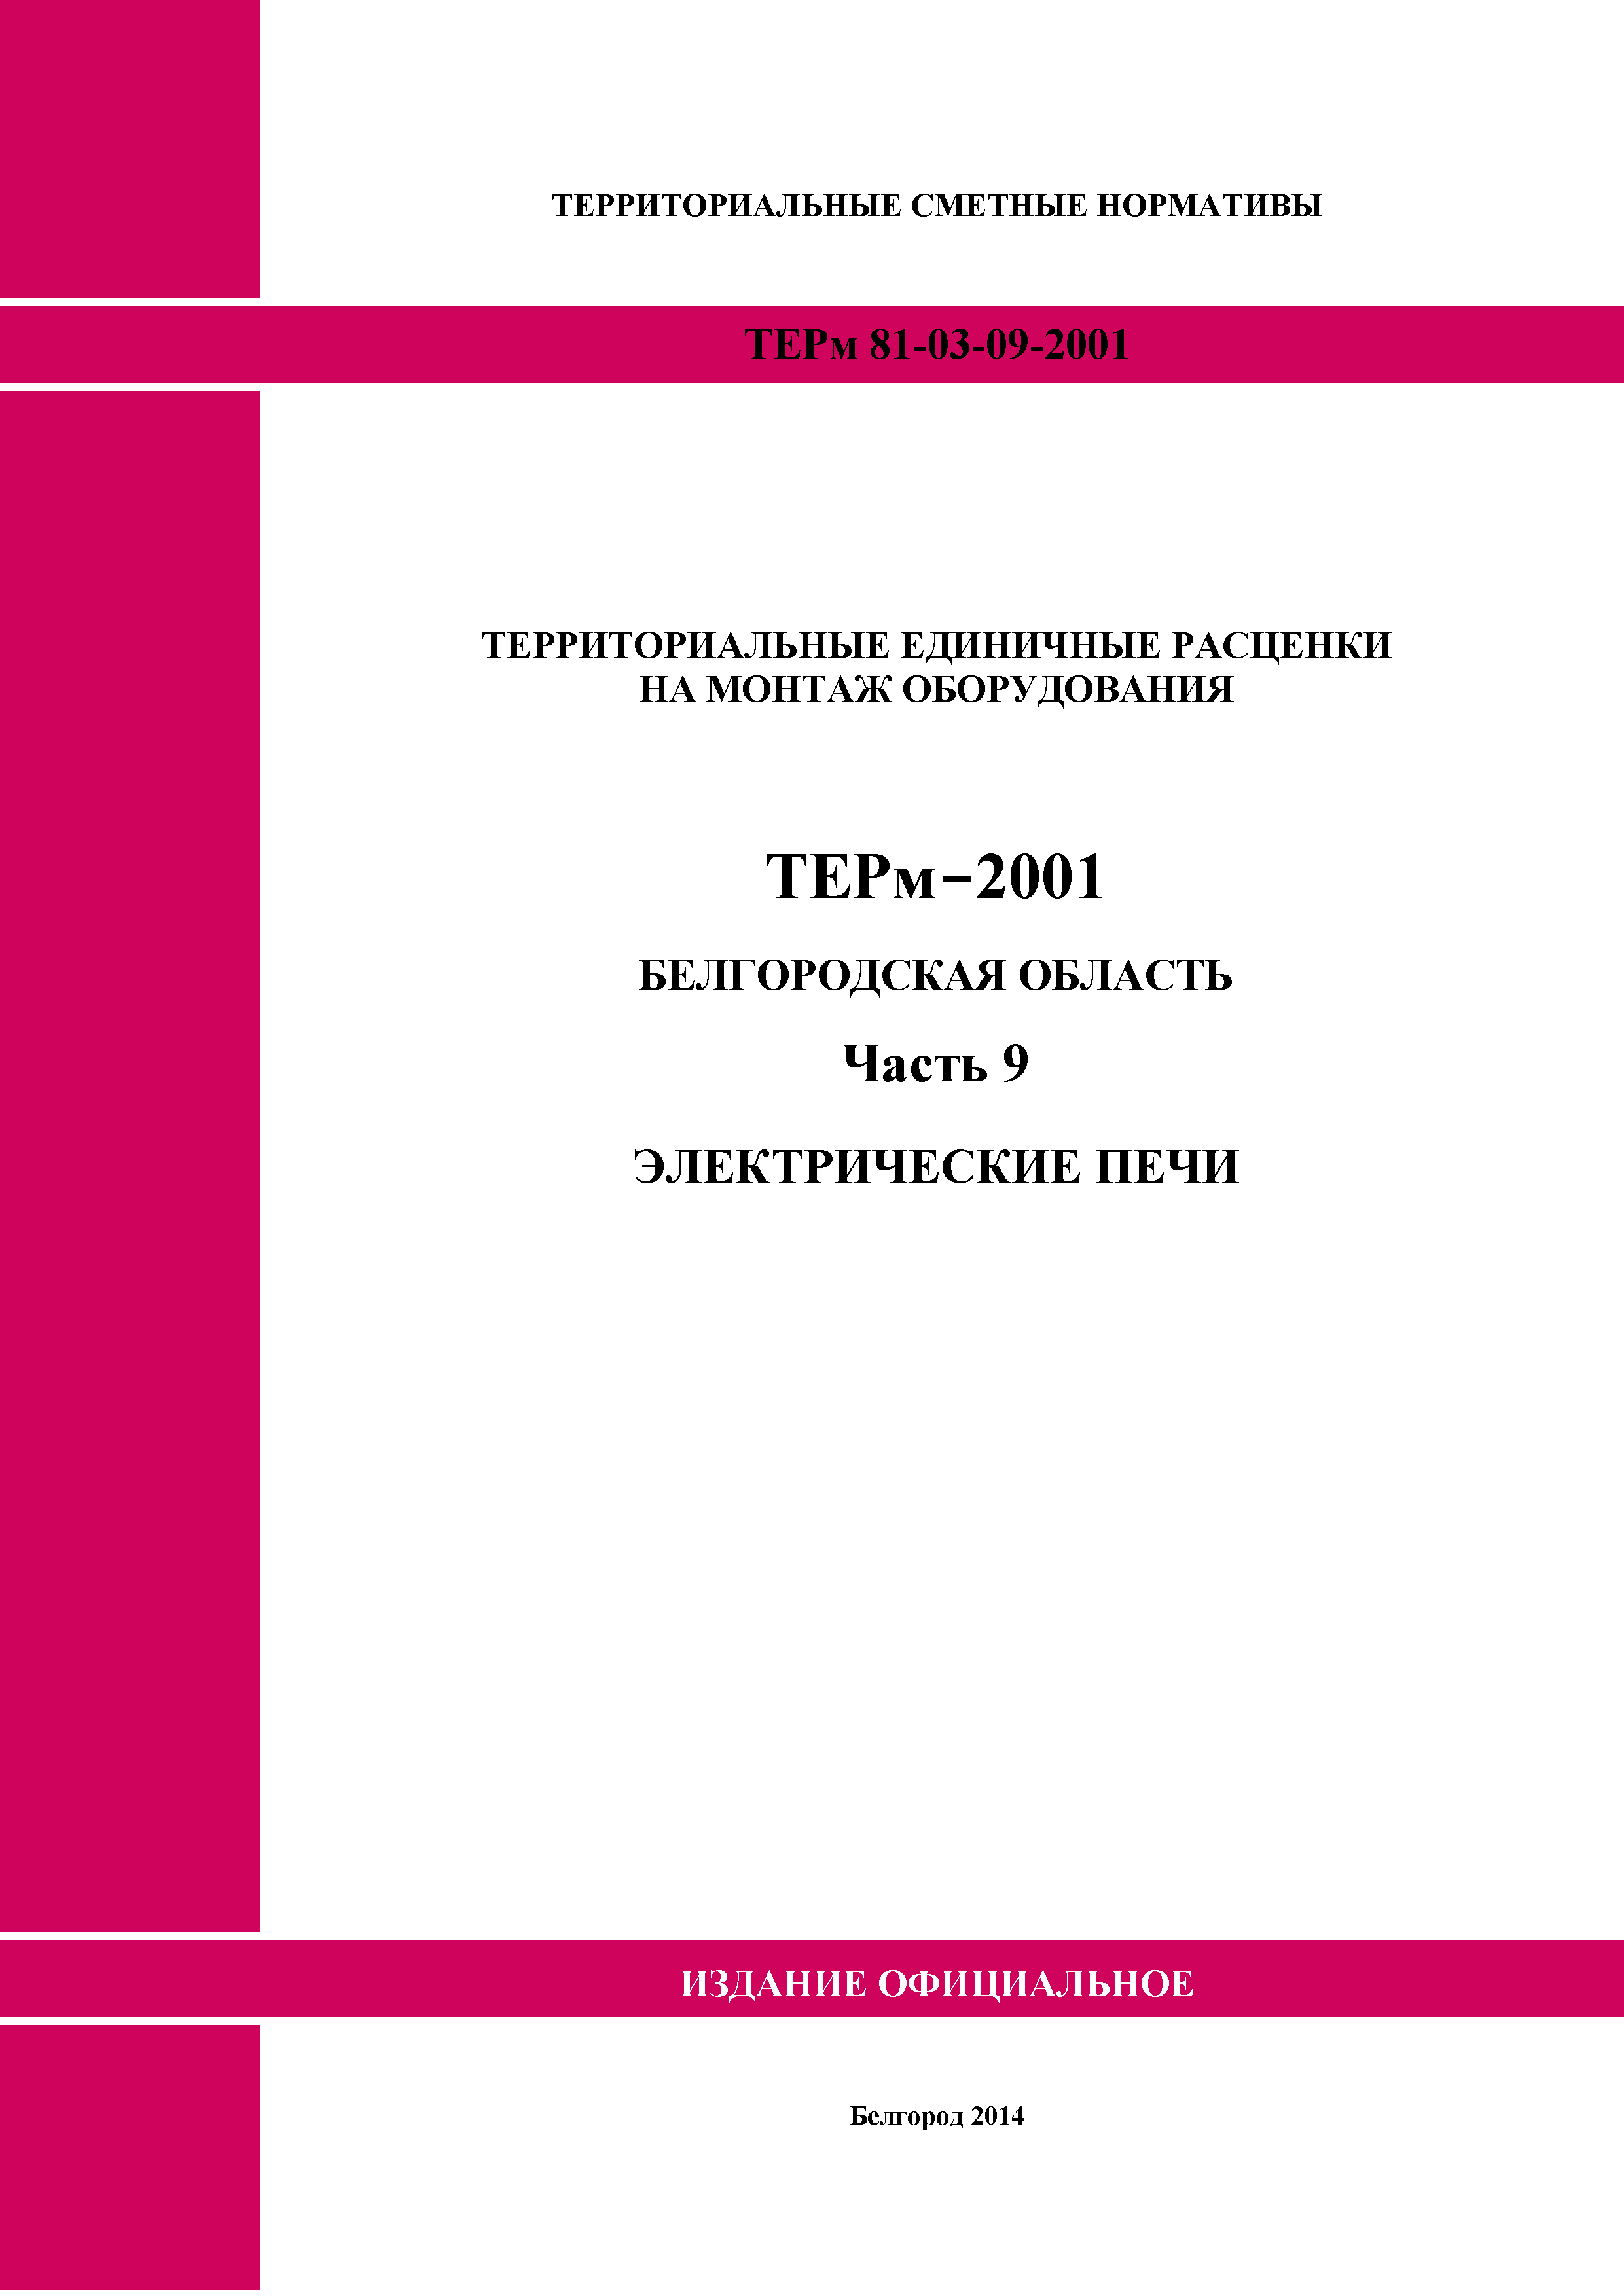 ТЕРм Белгородская область 81-03-09-2001